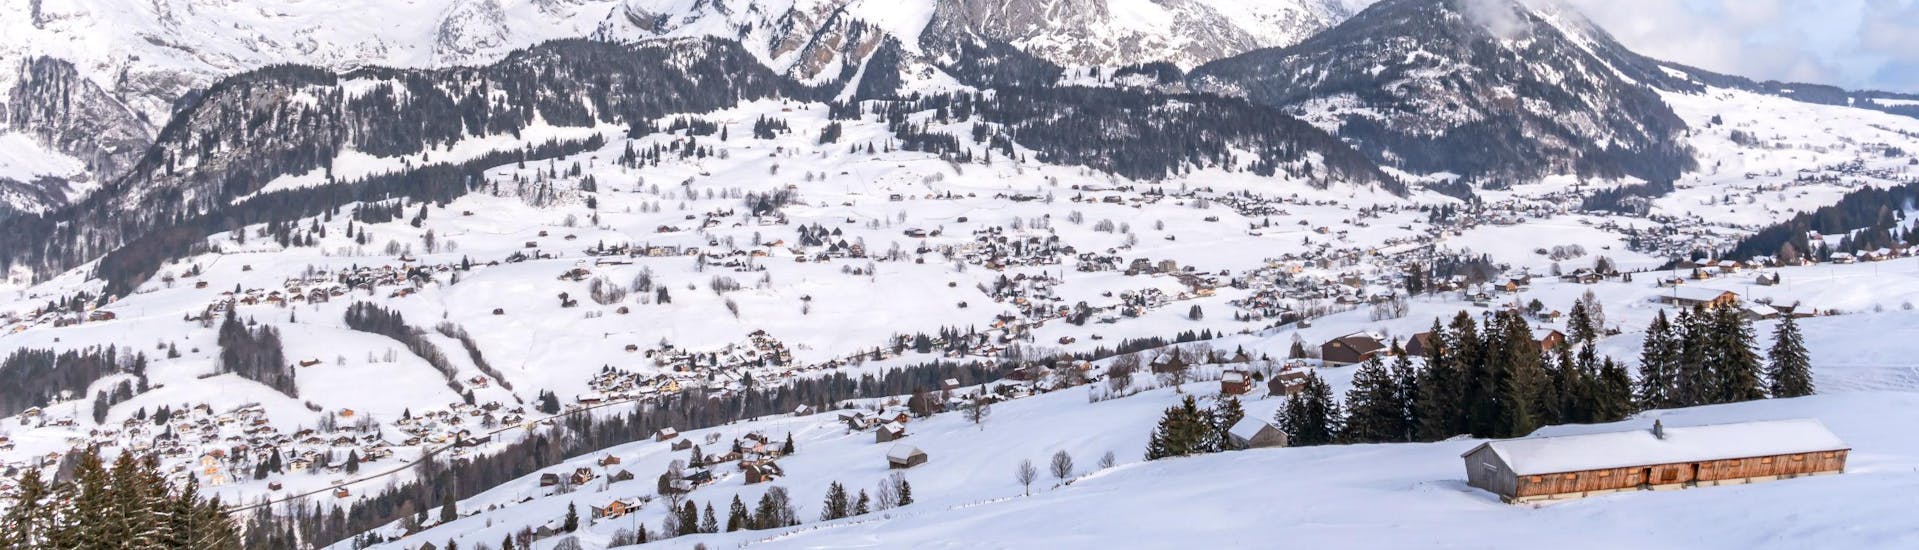 Une photo de Wildhaus dans la région suisse de Toggenburg dans le canton de Saint-Gall où les visiteurs peuvent réserver des cours de ski avec les écoles de ski locales.